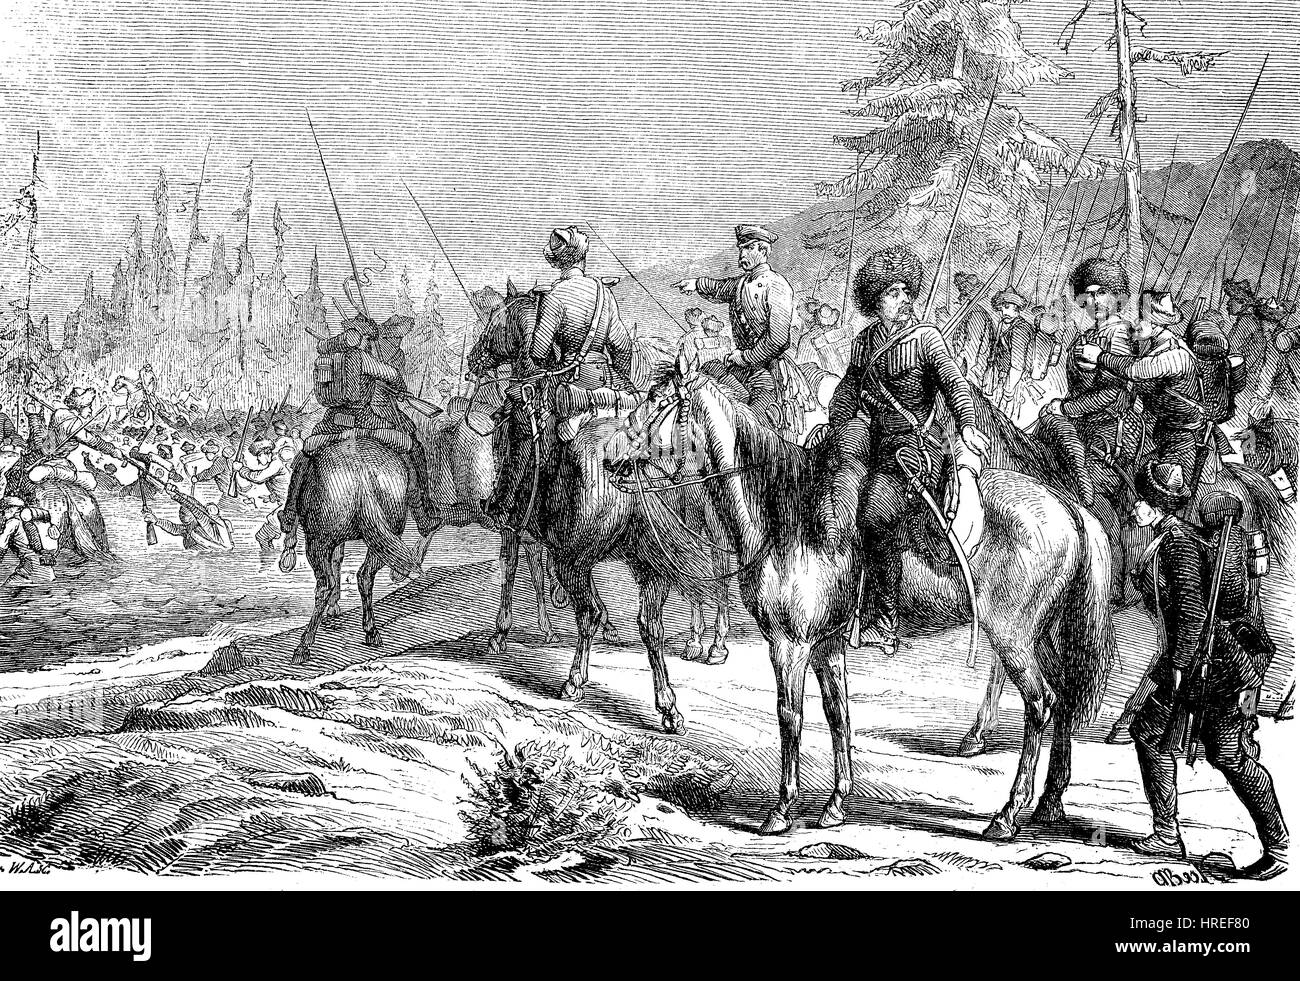 Soldaten, die Überquerung der Abyuka, war Kaukasus, die kaukasischen Krieges von 1817-1864 eine Invasion des Kaukasus durch das russische Reich führte in der russischen Annexion der Gebiete des Nordkaukasus und die ethnische Säuberung der Tscherkessen, Reproduktion von einem Holzschnitt aus dem 19. Jahrhundert, 1885 Stockfoto